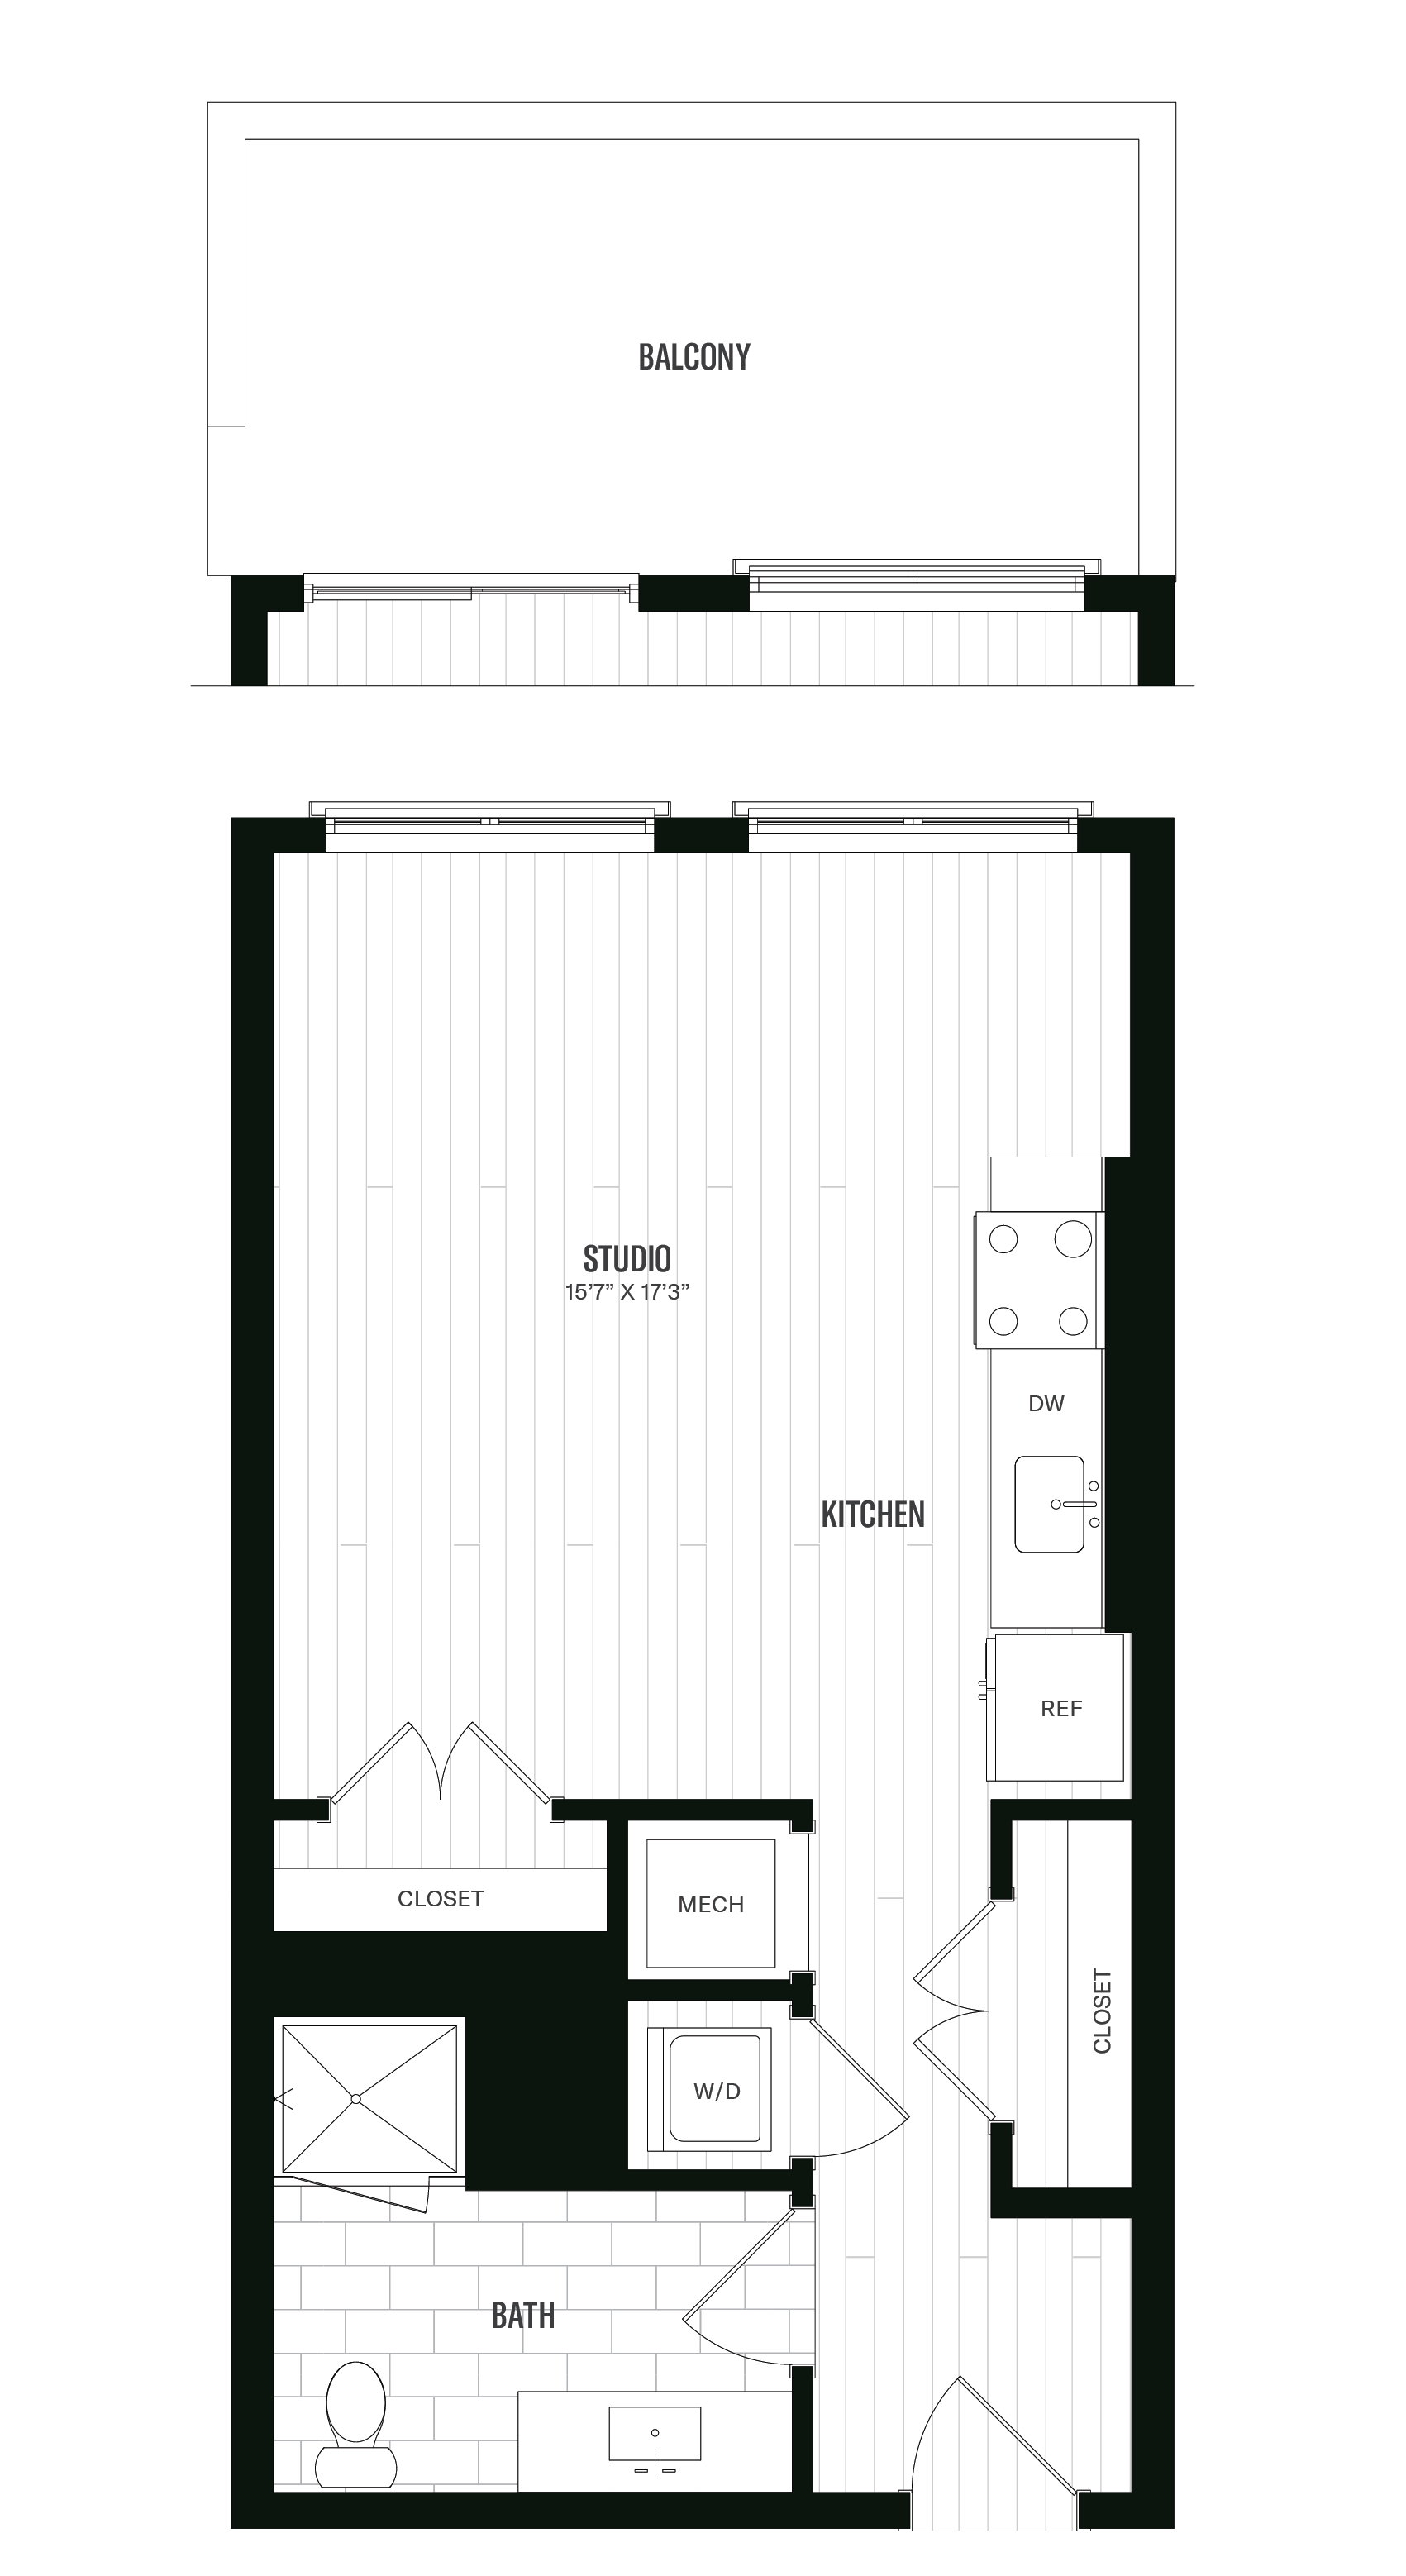 Floorplan image of unit 638